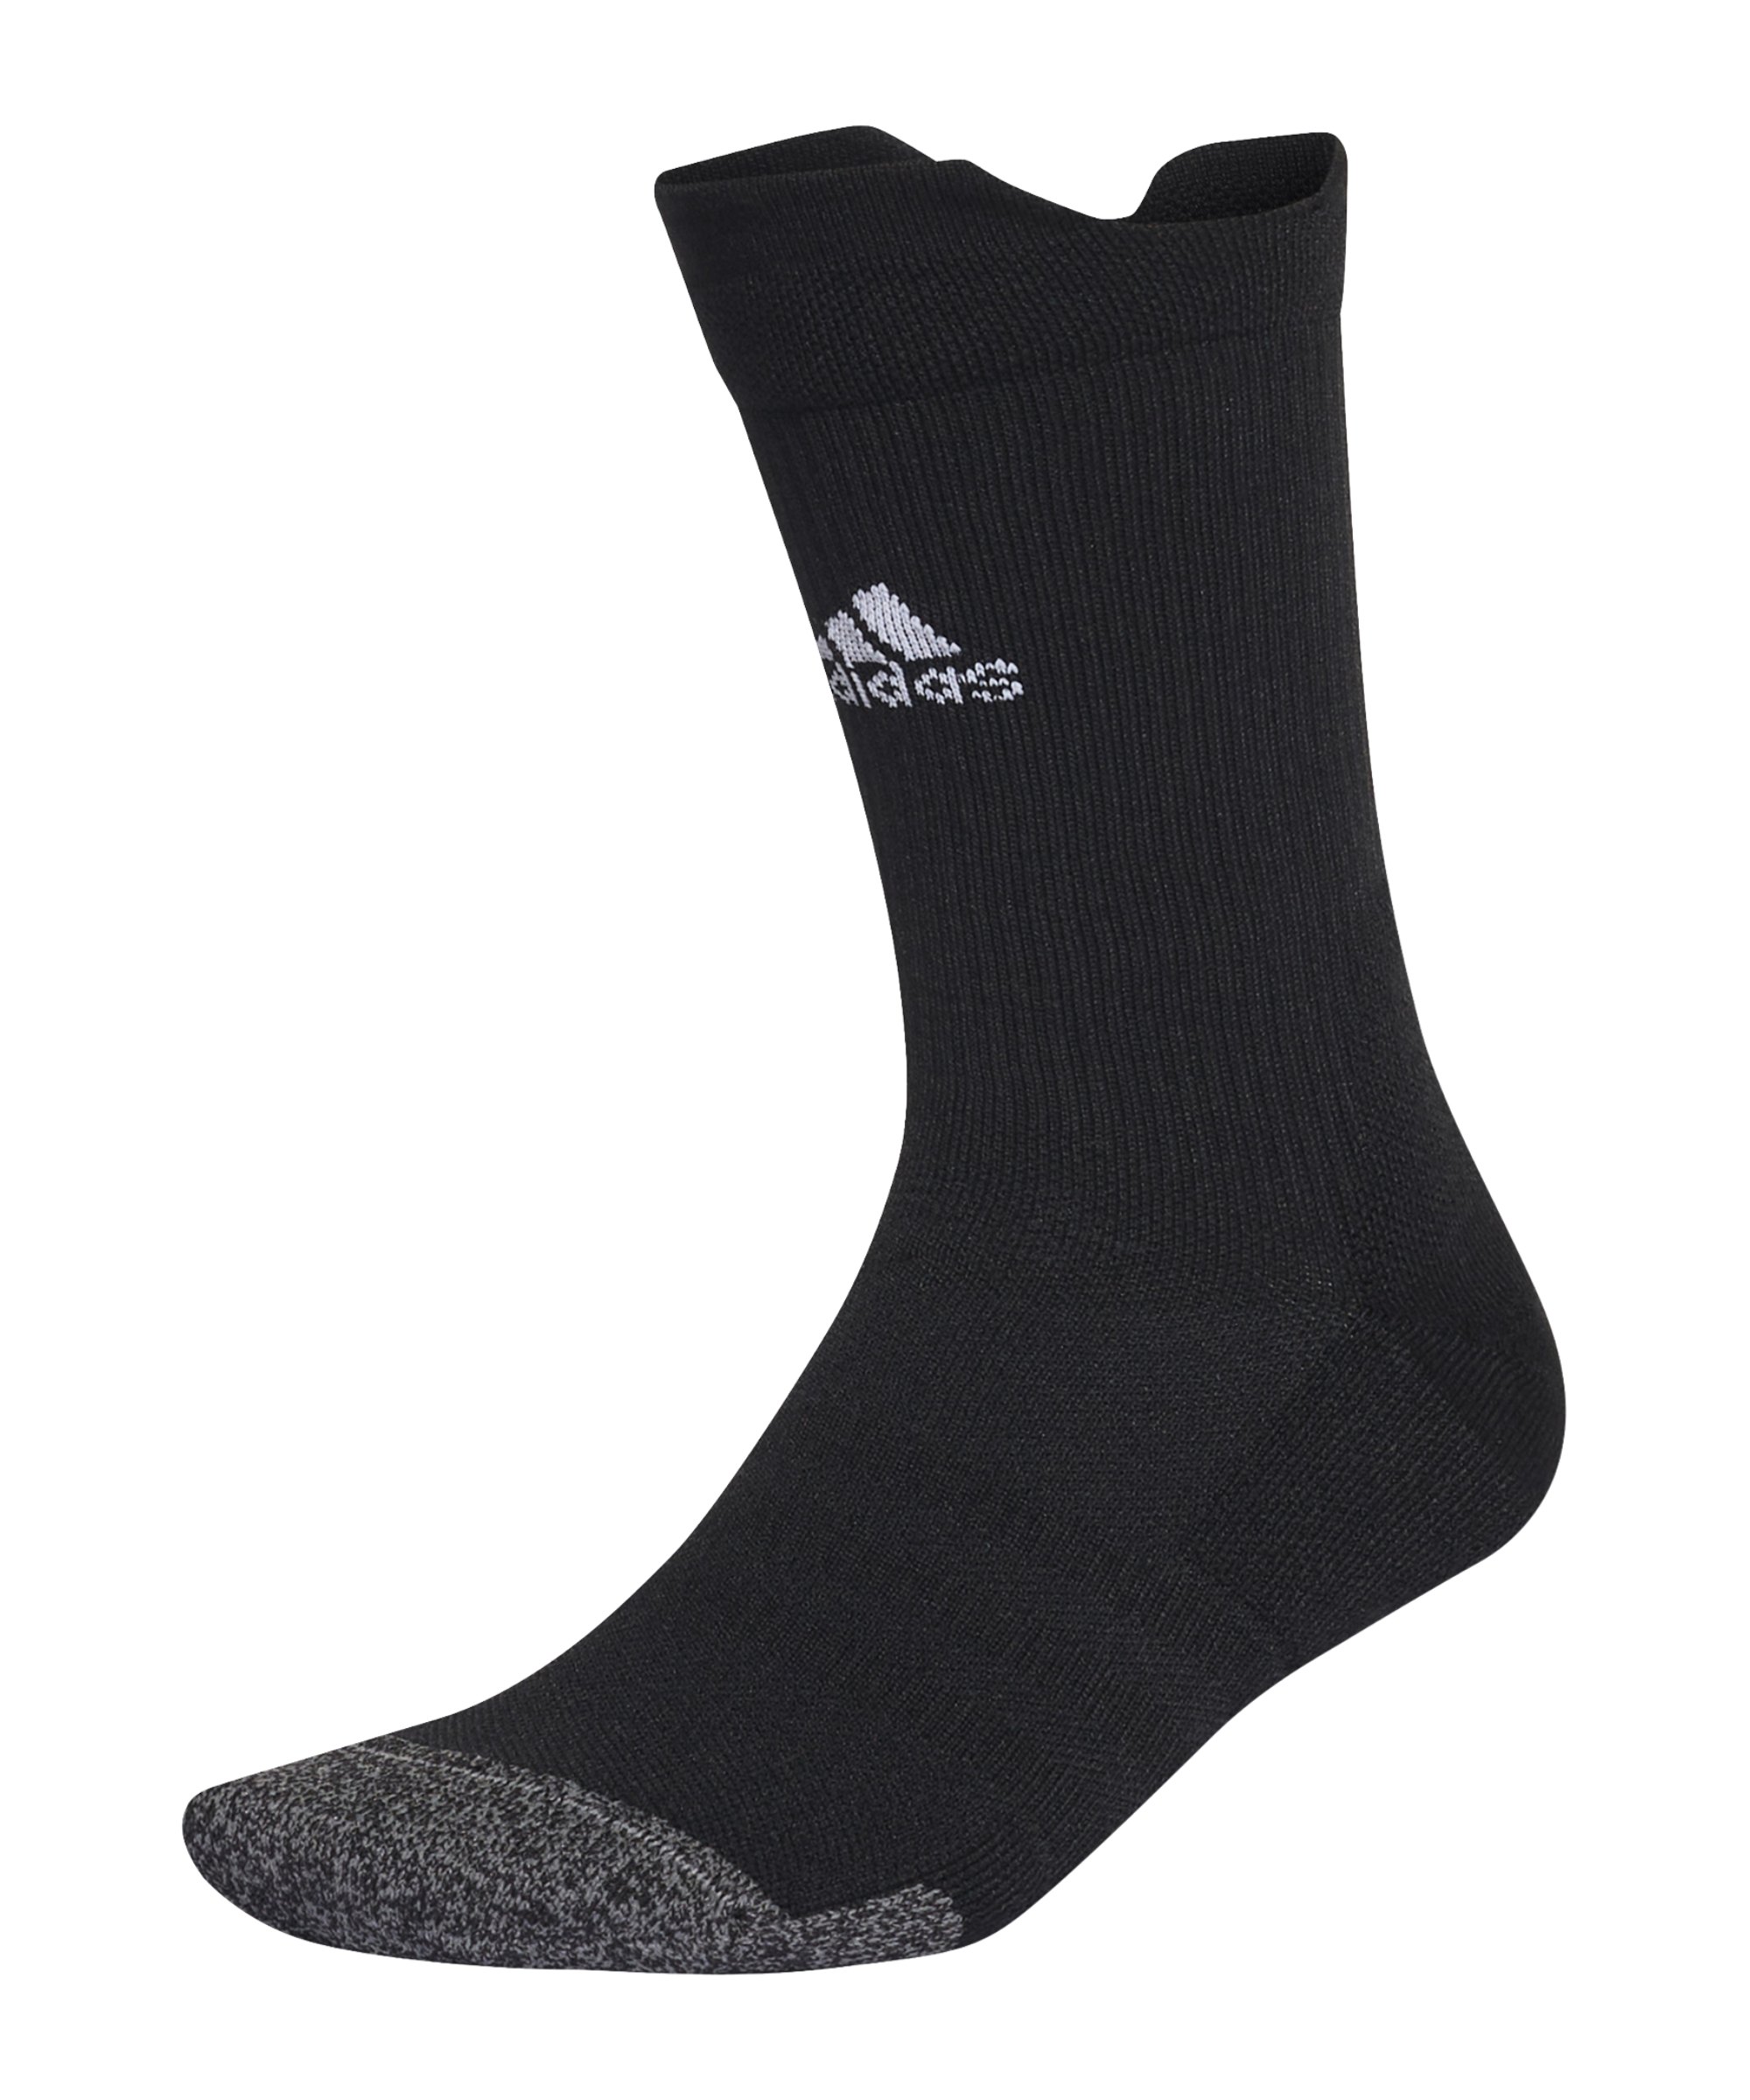 adidas Cush Socken Schwarz Weiss - schwarz